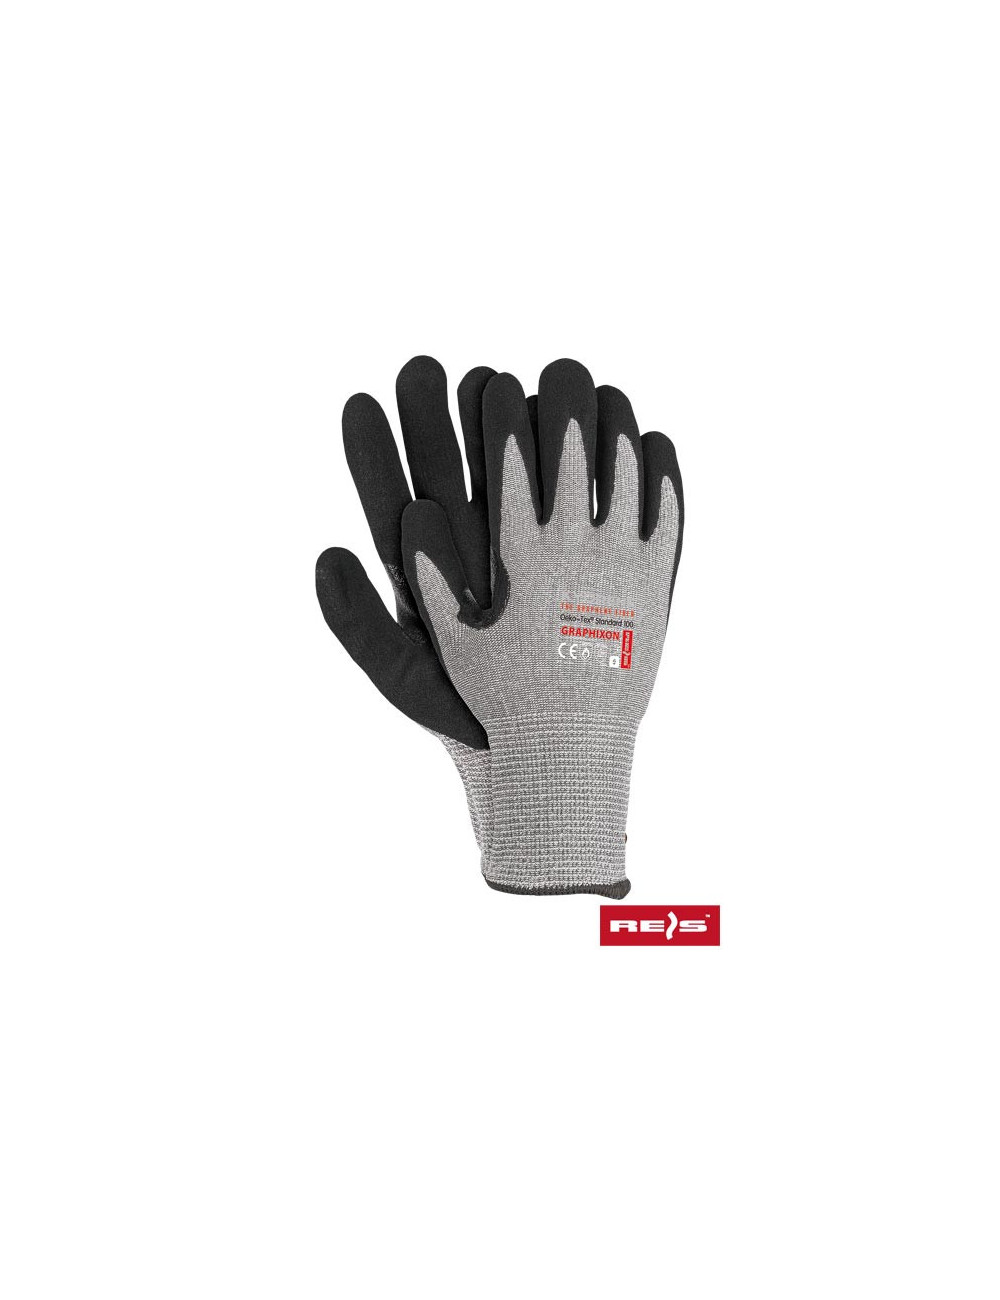 Protective gloves graphixon jsb light gray-black Reis